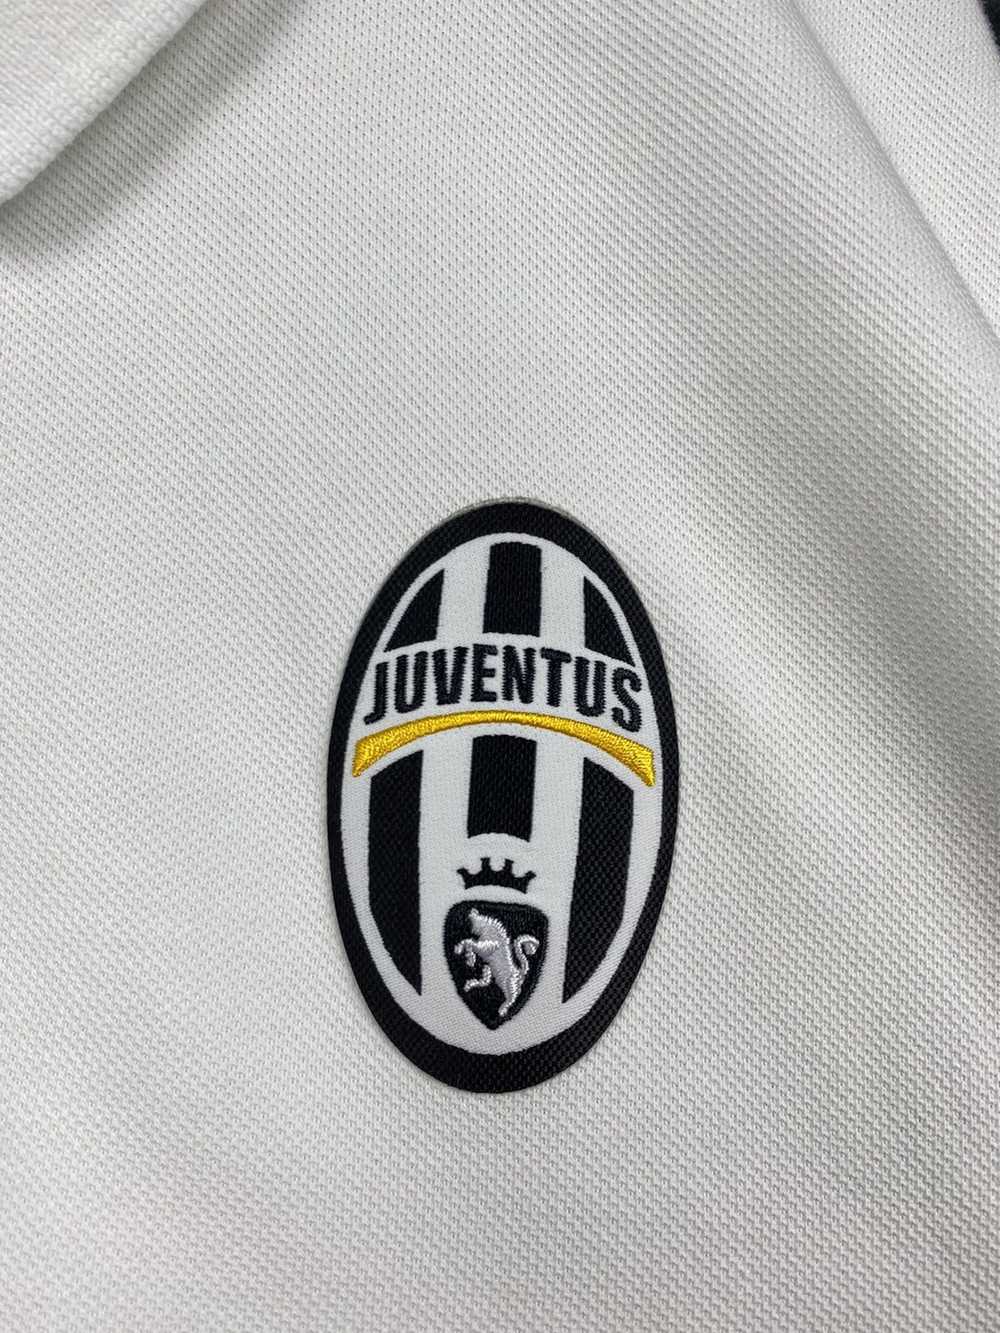 Adidas × Soccer Jersey × Streetwear Juventus 2016… - image 3